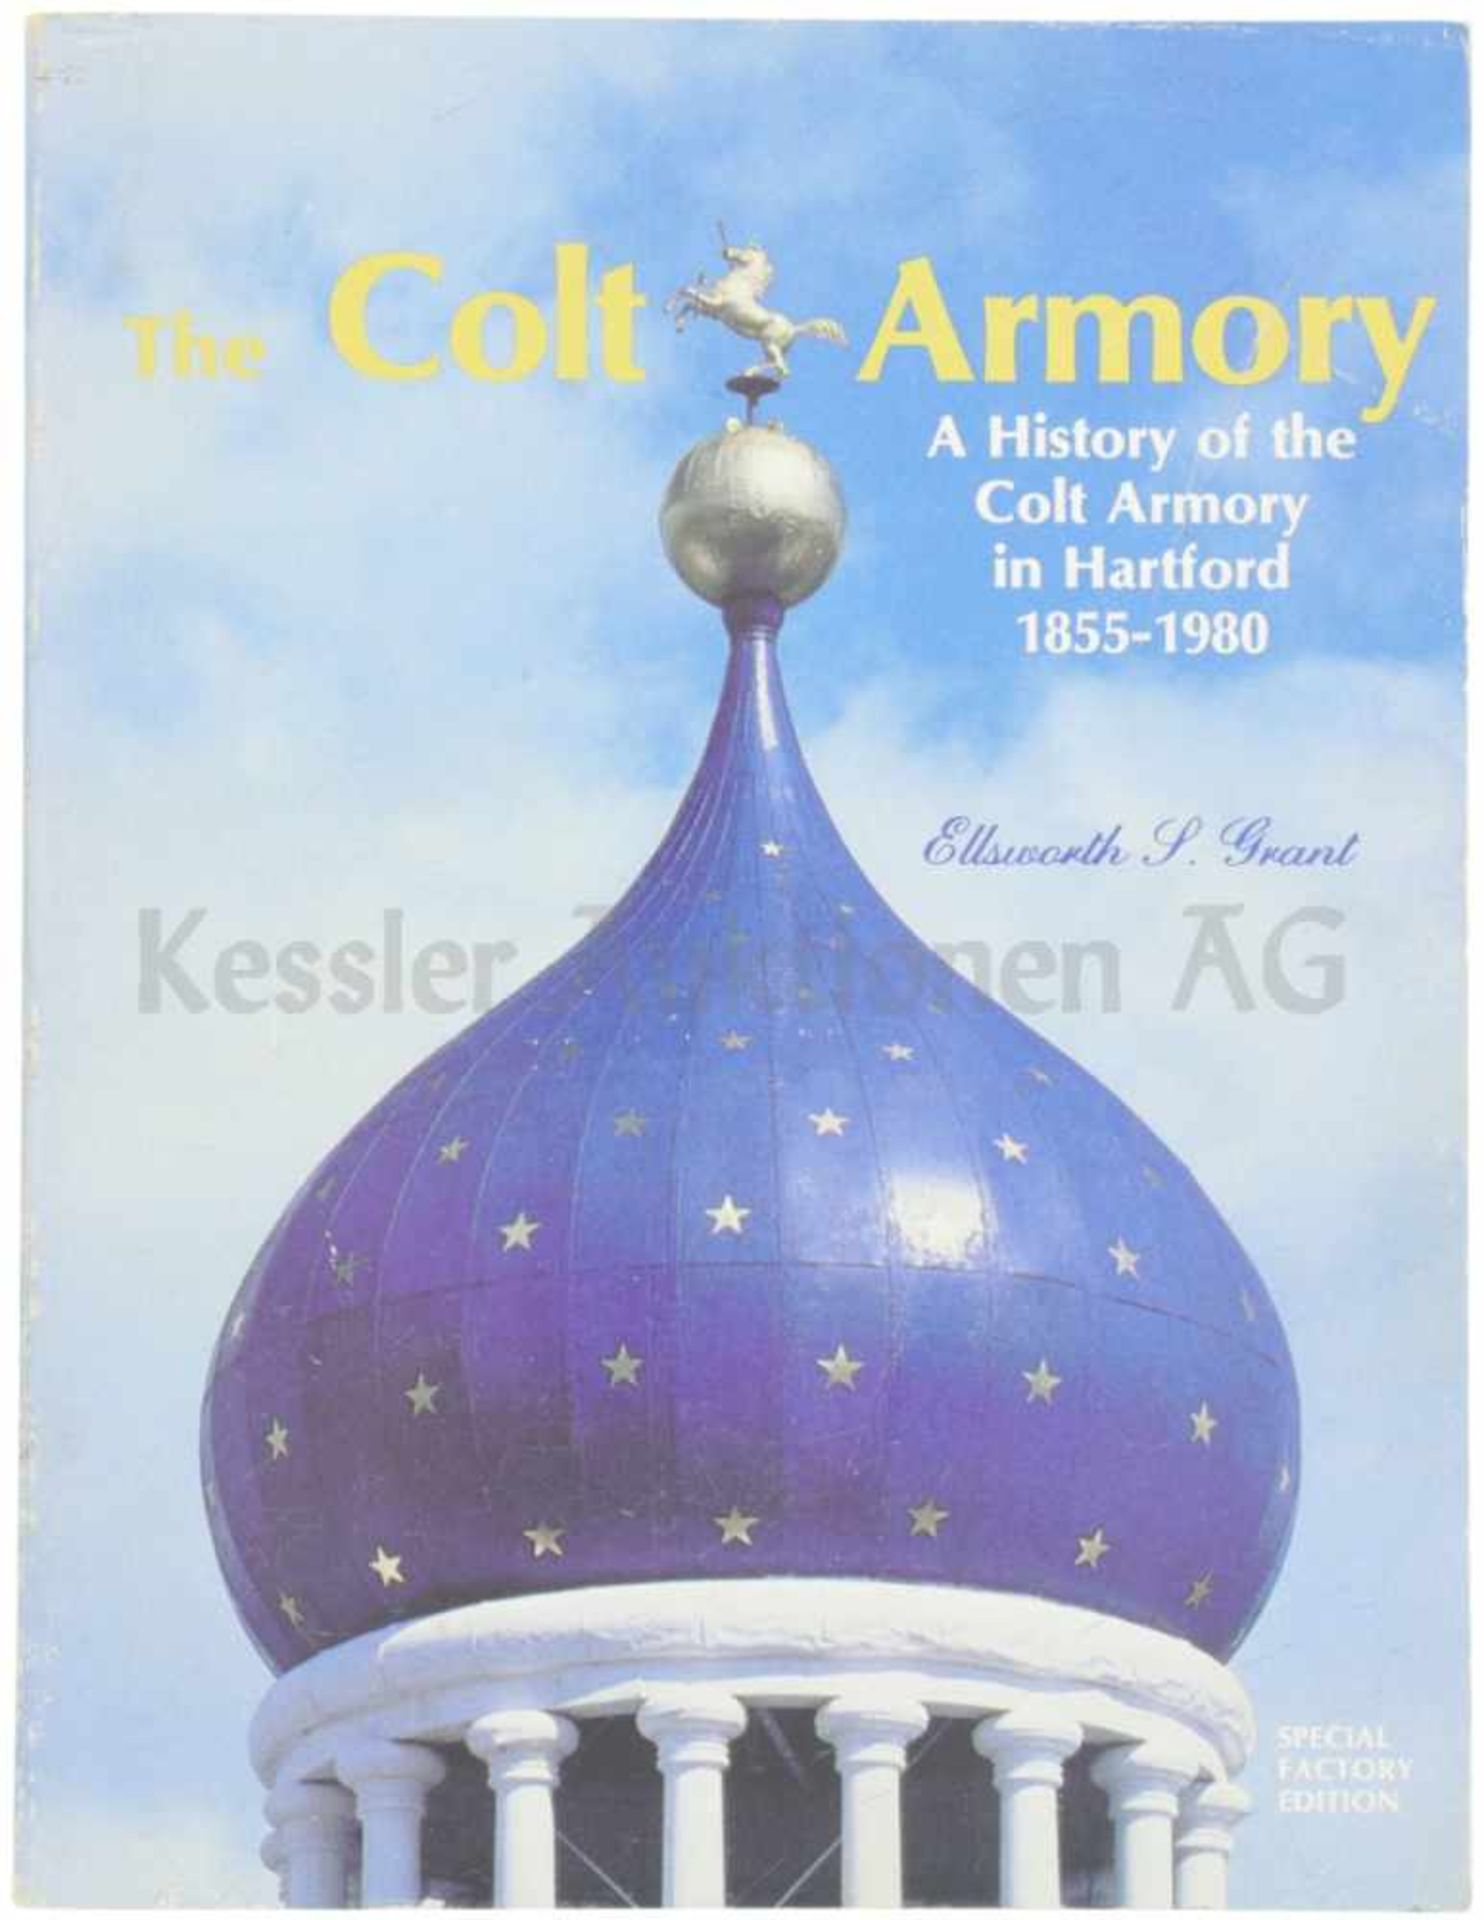 The Colt Armory Diverse Illustrationen enthaltend, wird die Geschichte der Firma Colt in Hartford,